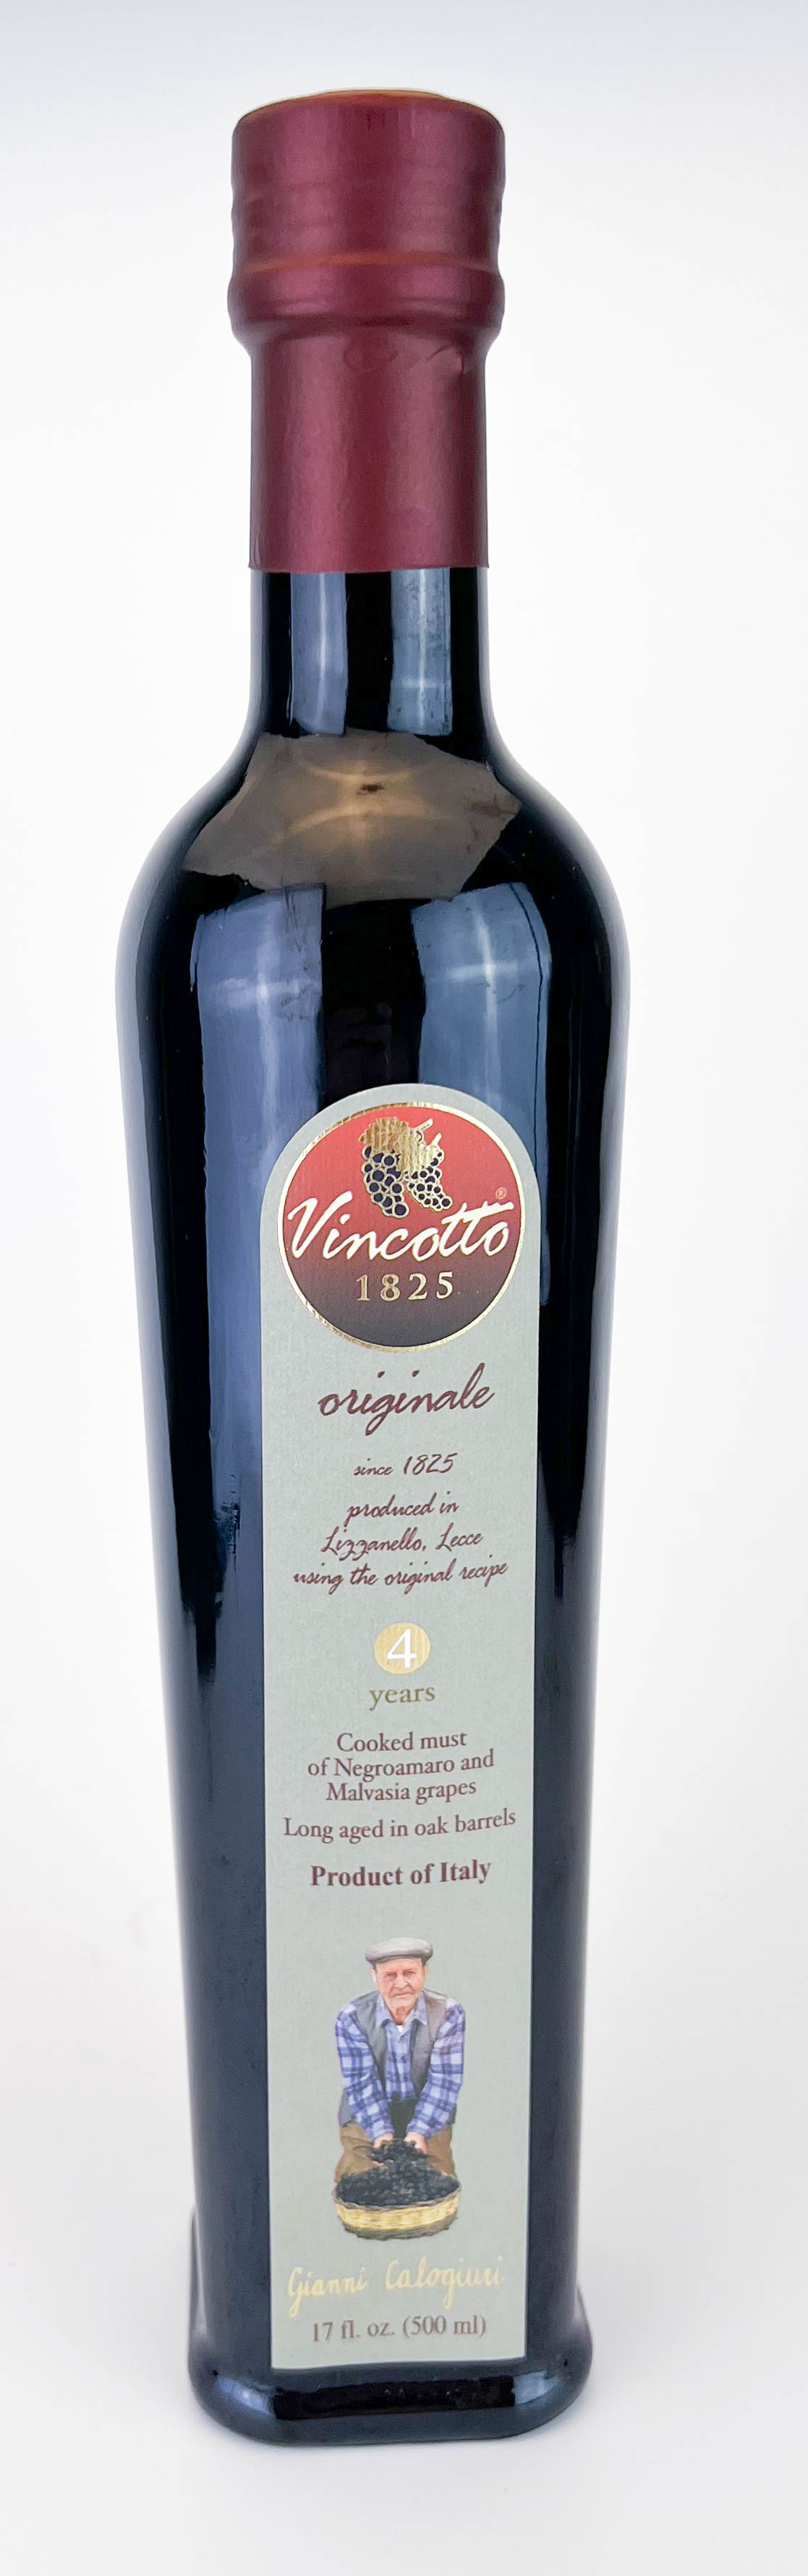 Vincotto ® ORIGINALE 500ml Flasche